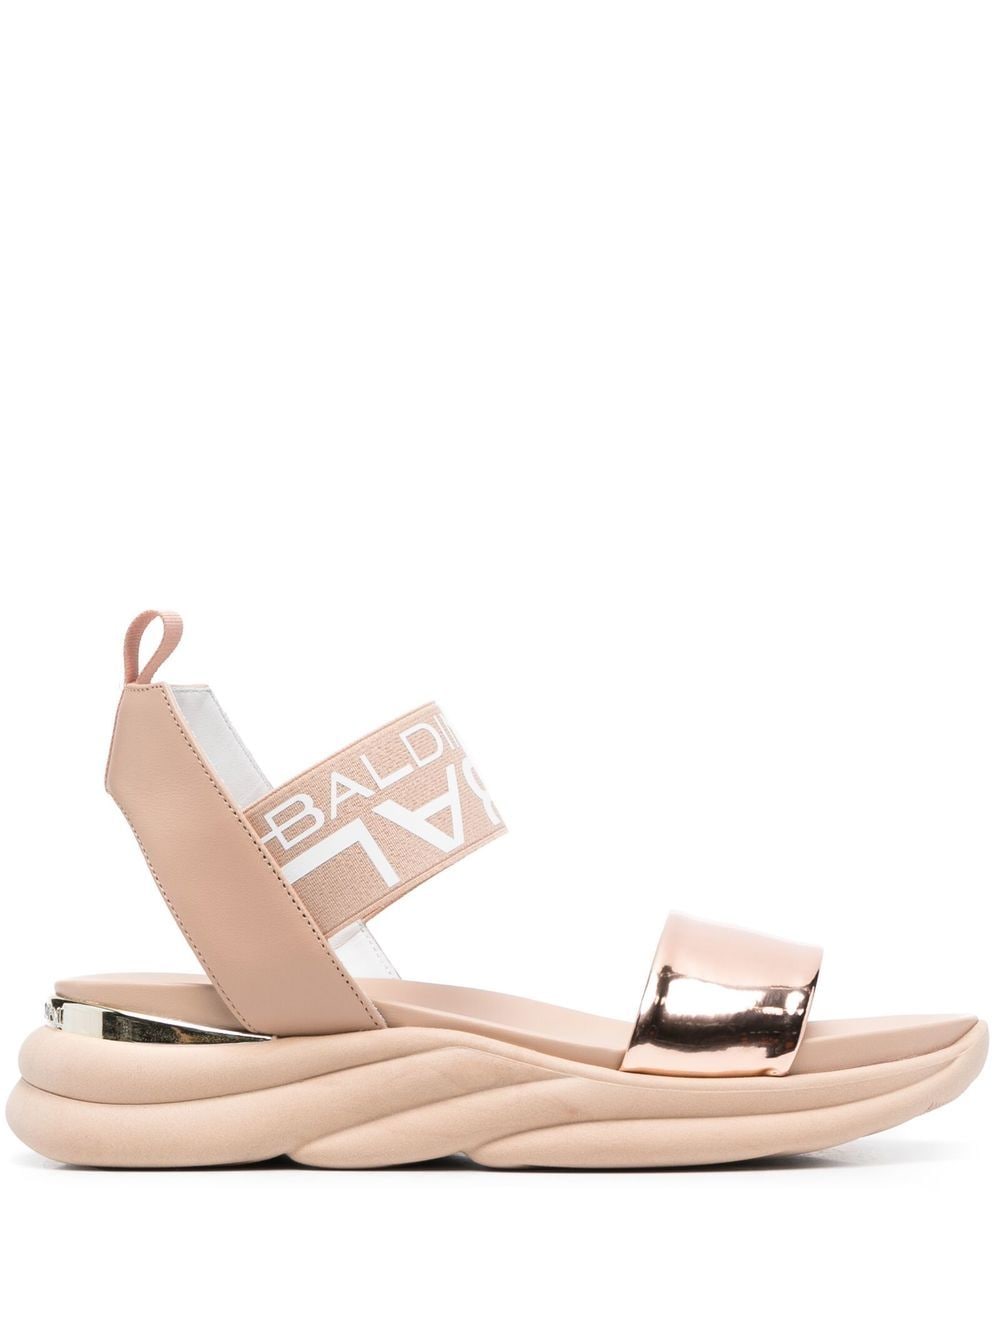 Baldinini rose-gold strap sandals - Pink von Baldinini